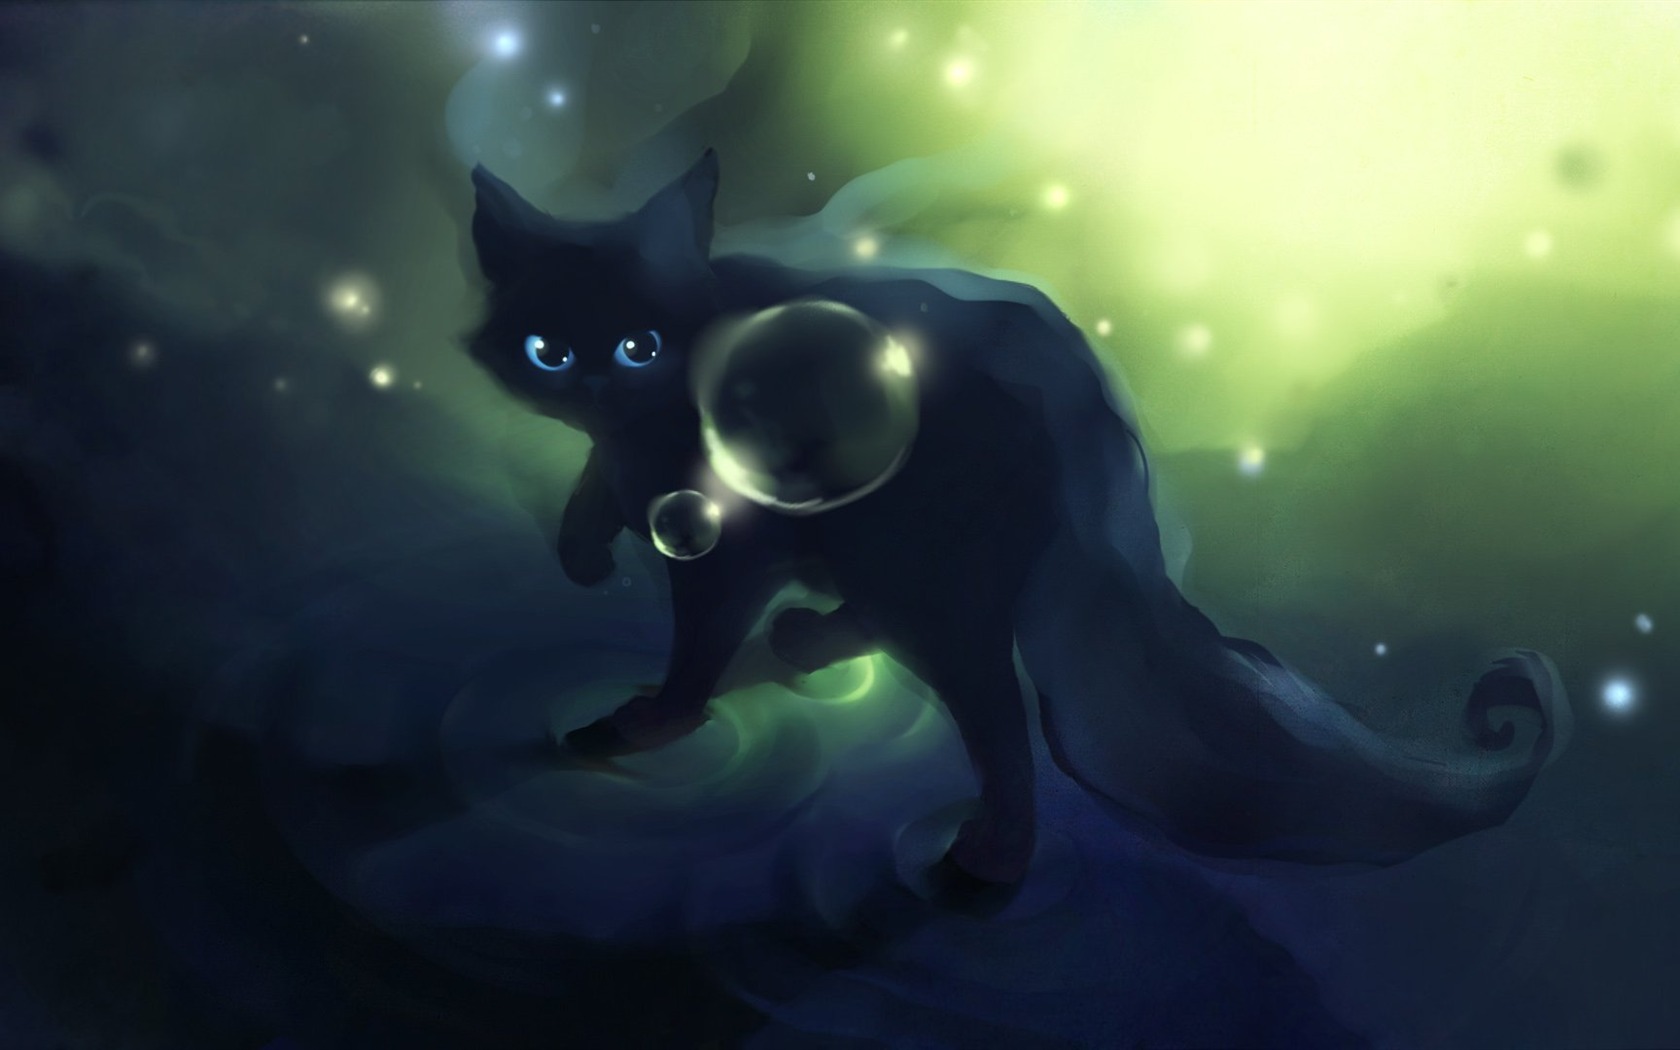 Apofiss pequeño gato negro papel pintado acuarelas #12 - 1680x1050